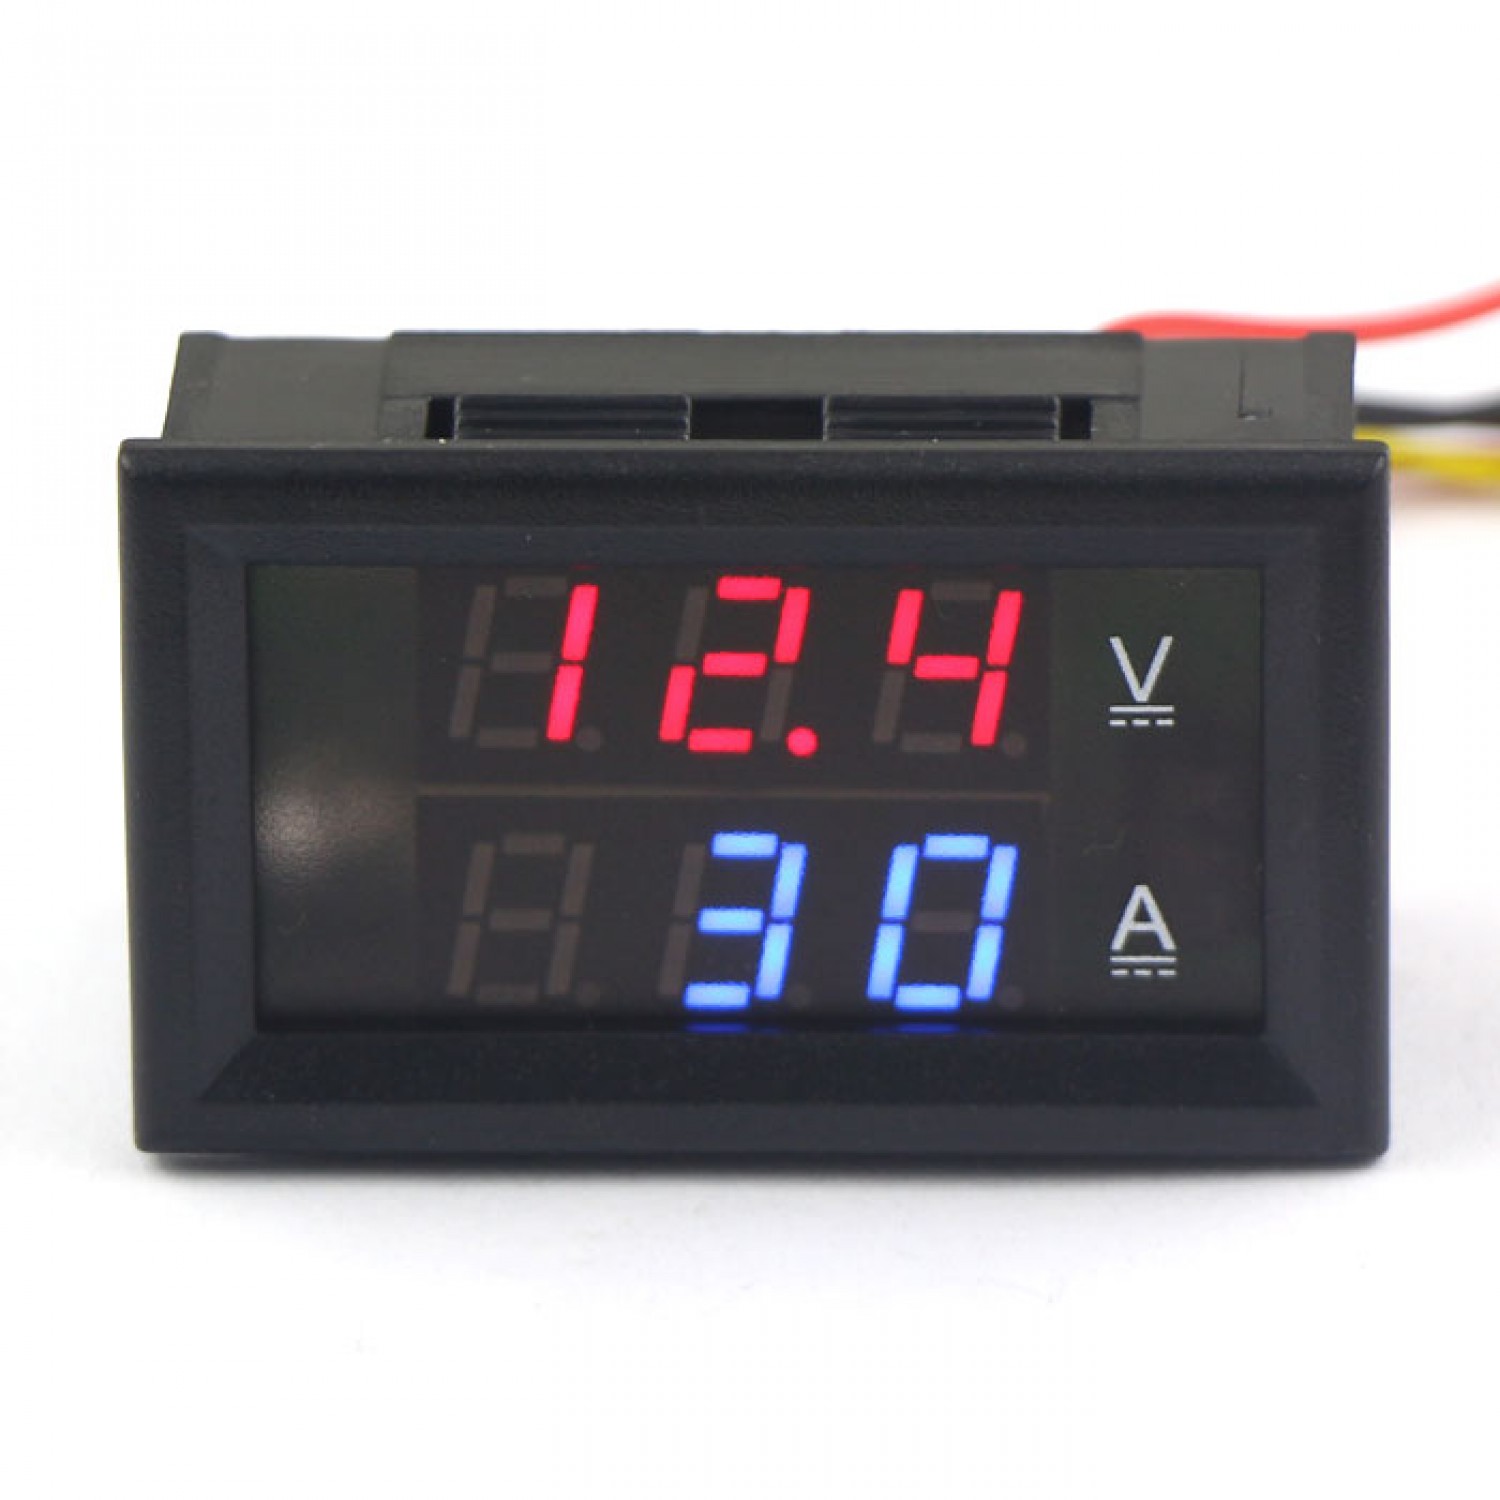 DC 0V-300V Dual 2In1 LED Digital Ammeter Voltmeter Voltage AMP Meter R&B 5A 